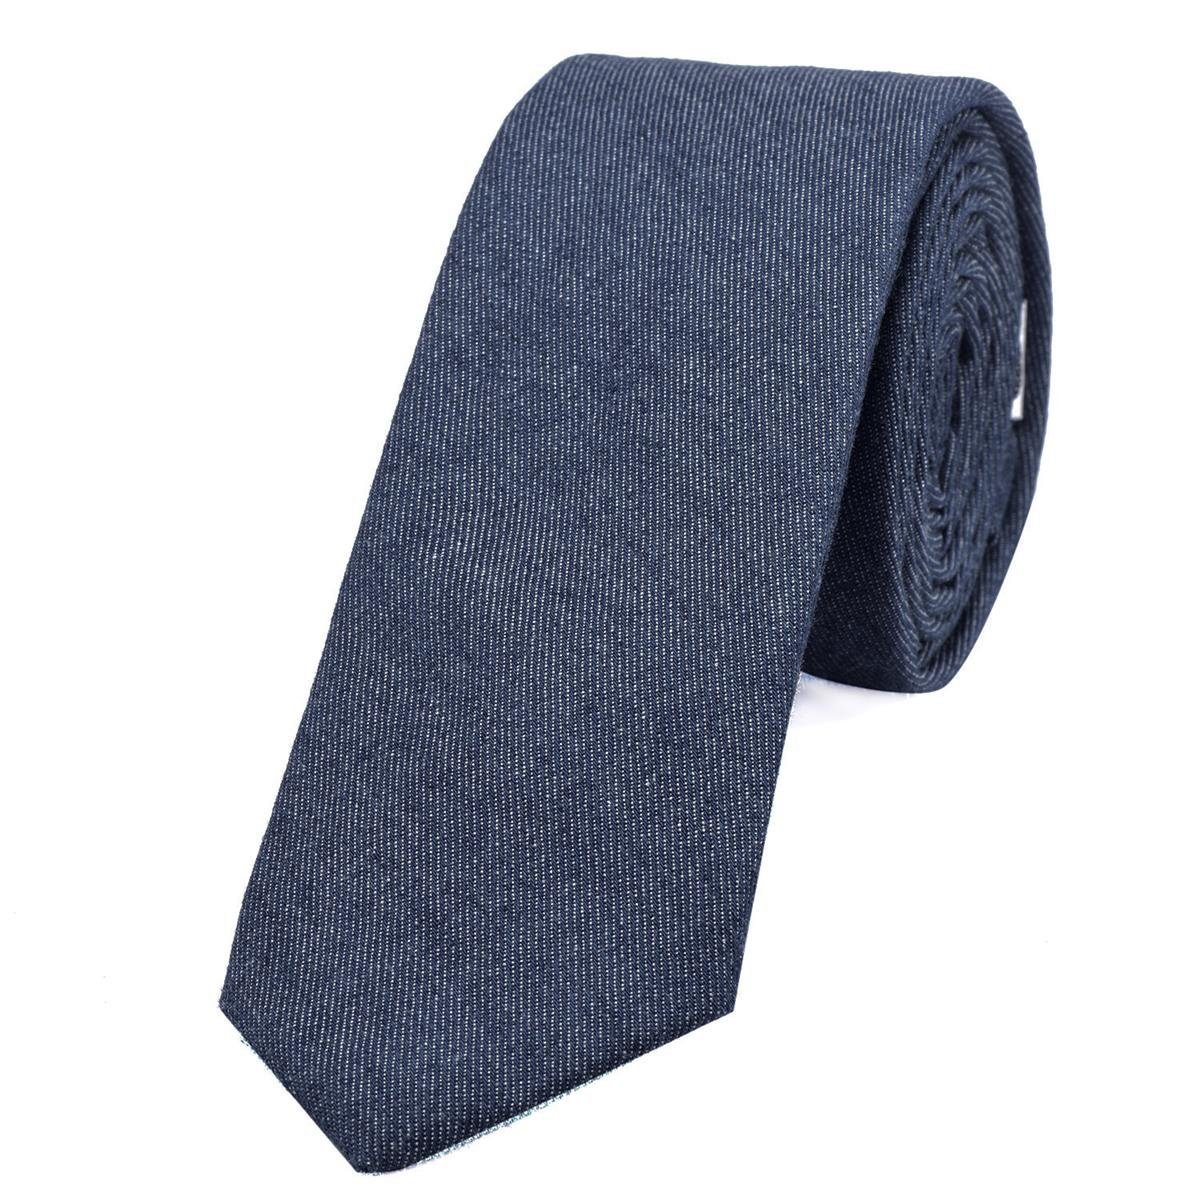 DonDon Krawatte Herren Krawatte 6 cm einfarbig kariert und gepunkt (Packung, 1-St., 1x Krawatte) Baumwolle, verschiedene Muster, für Büro oder festliche Veranstaltungen jeans-blau | Breite Krawatten